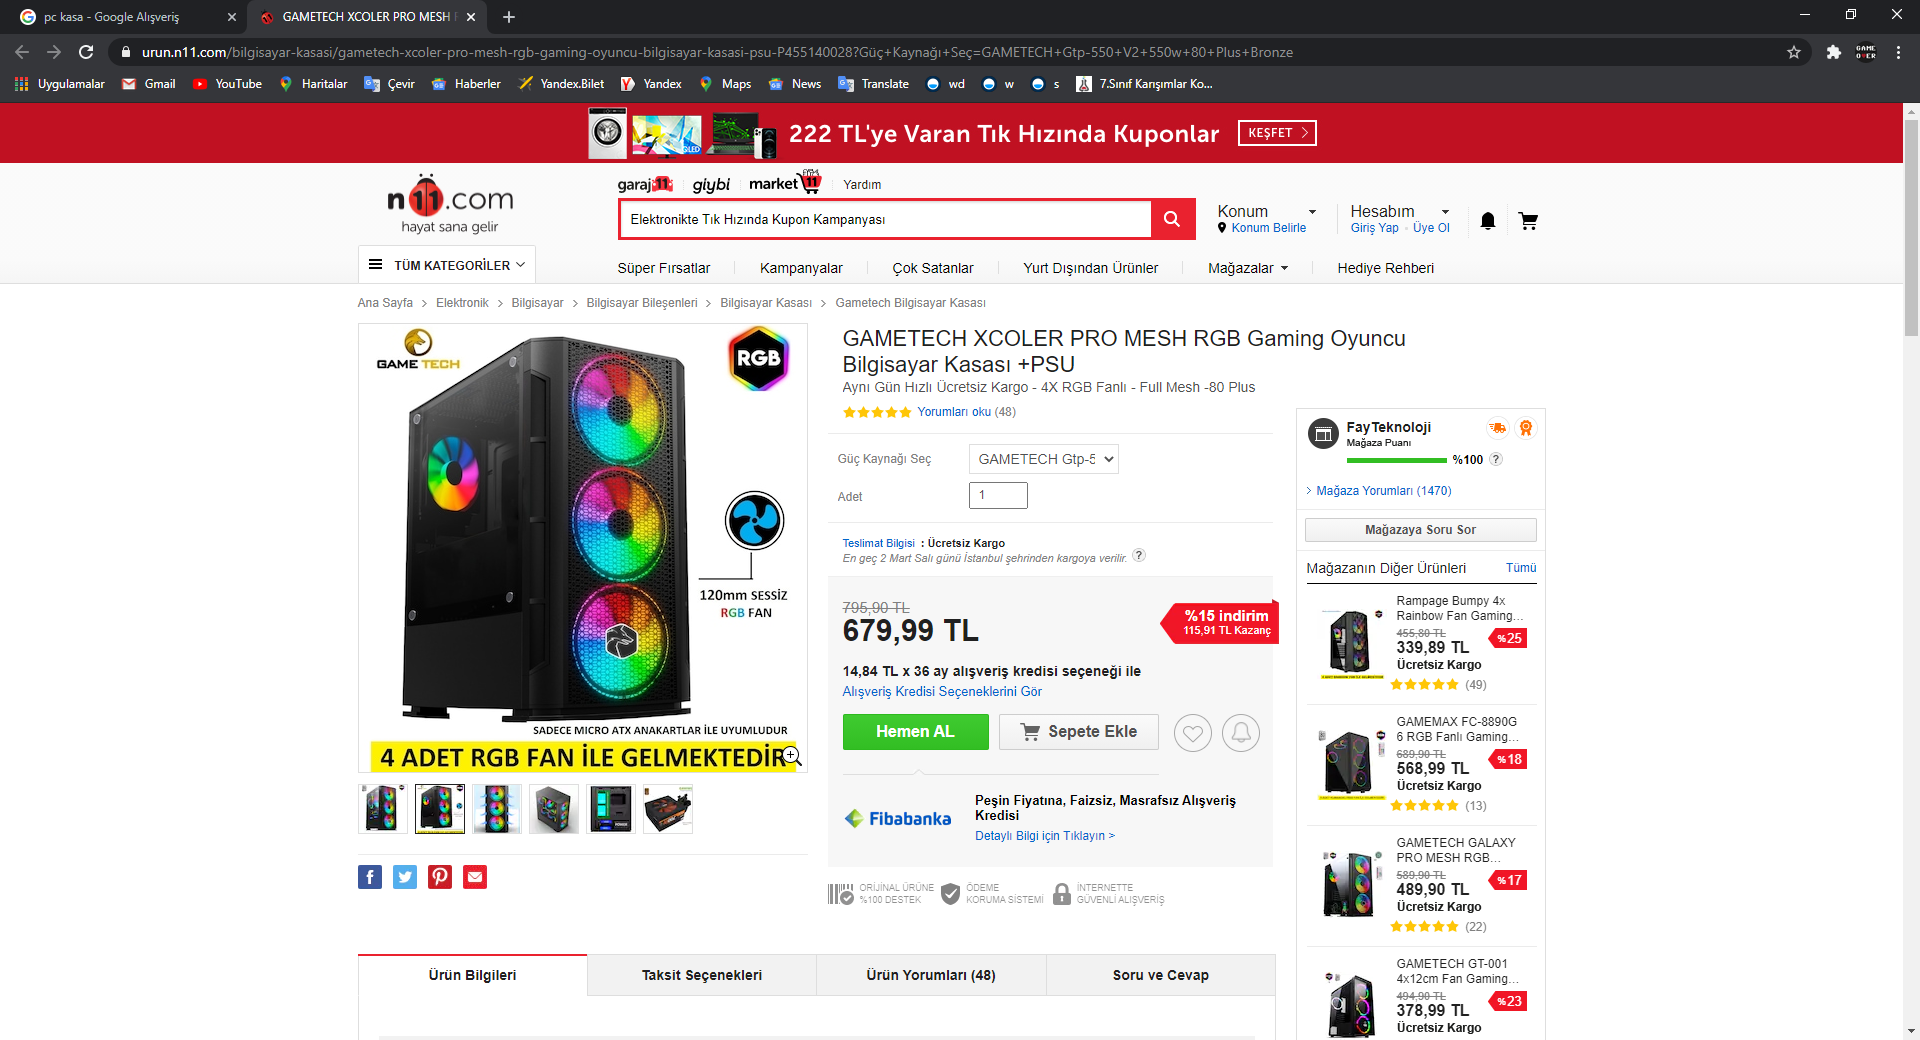 GAMETECH XCOLER PRO MESH RGB Gaming Oyuncu Bilgisayar Kasası +PSU Fiyatları ve Özellikleri - G...png